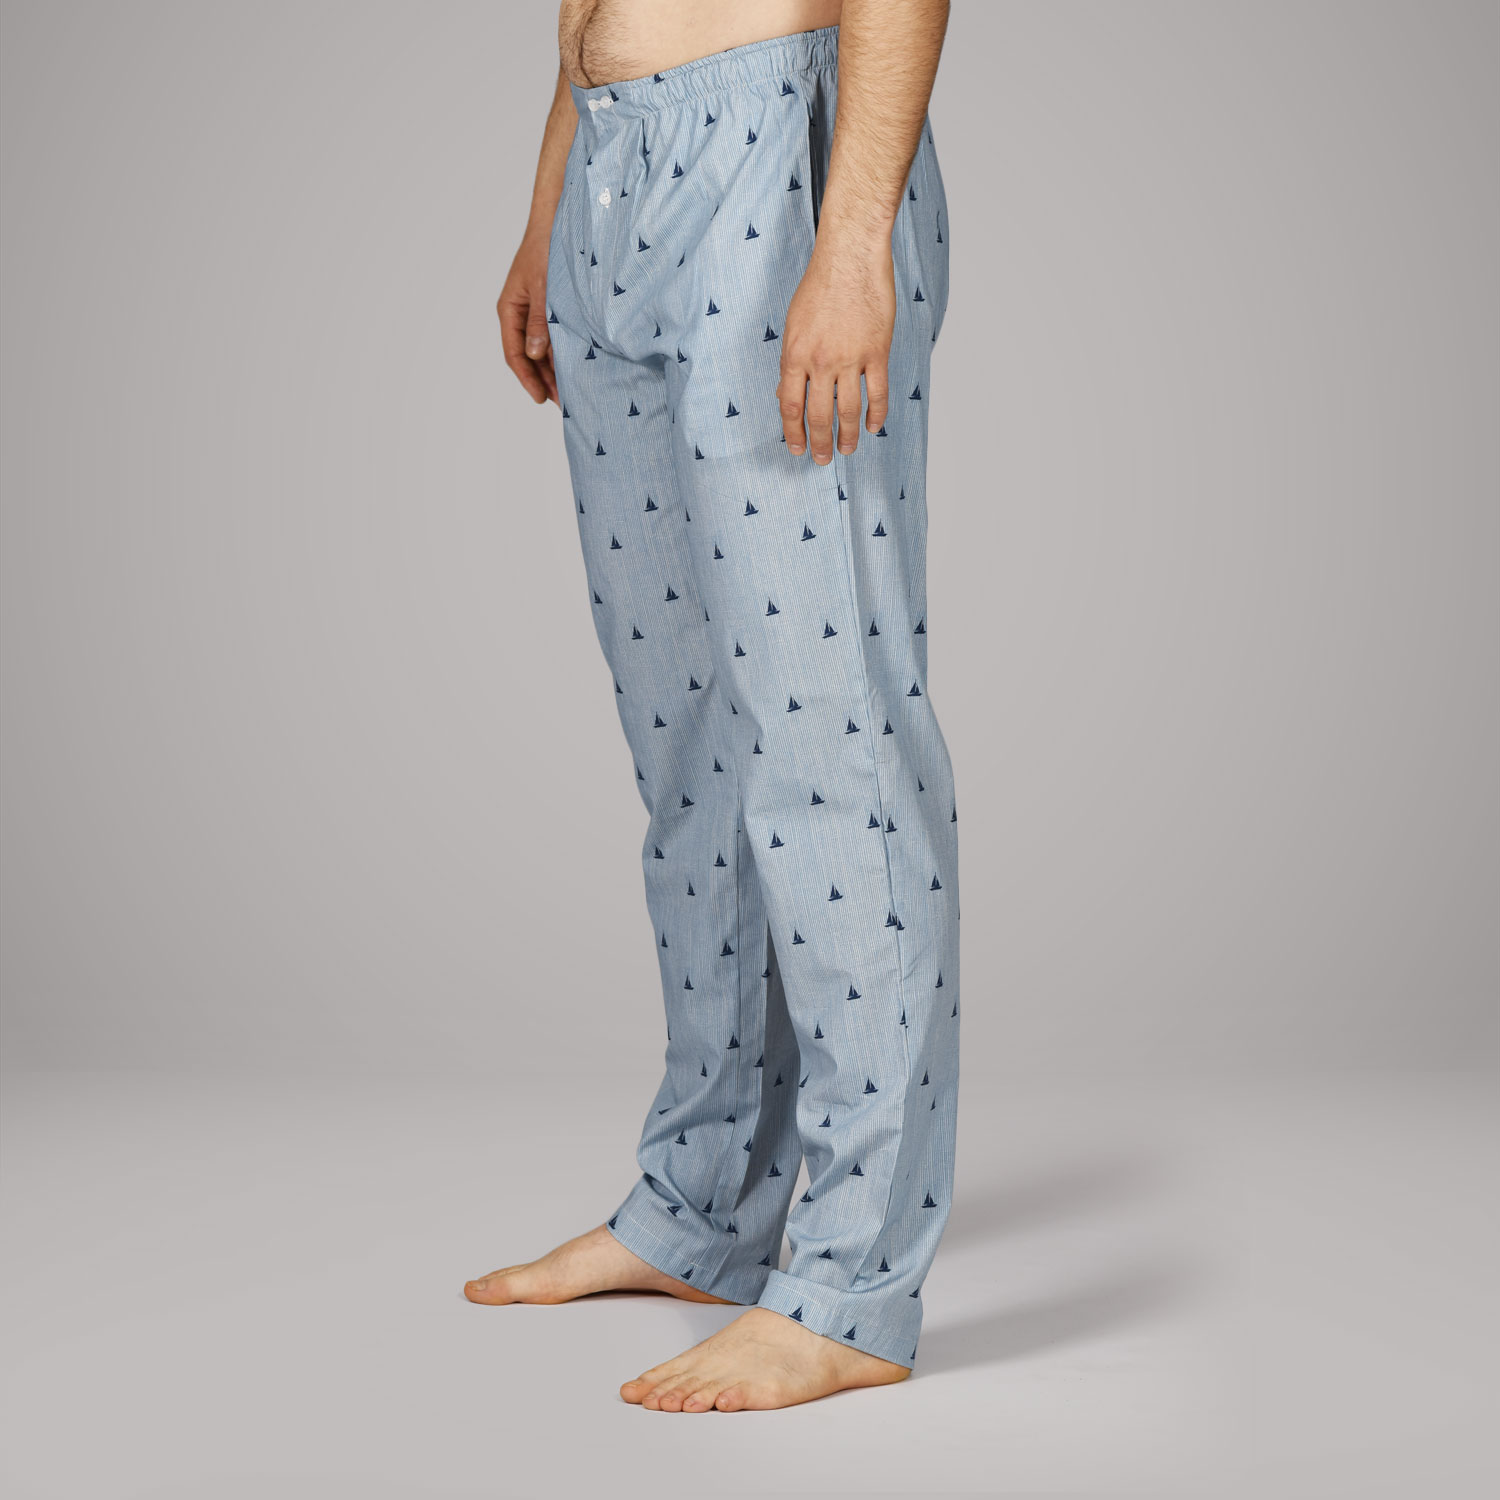 Achile homme : Pyjama long en pur coton et molleton RETRO WINTER